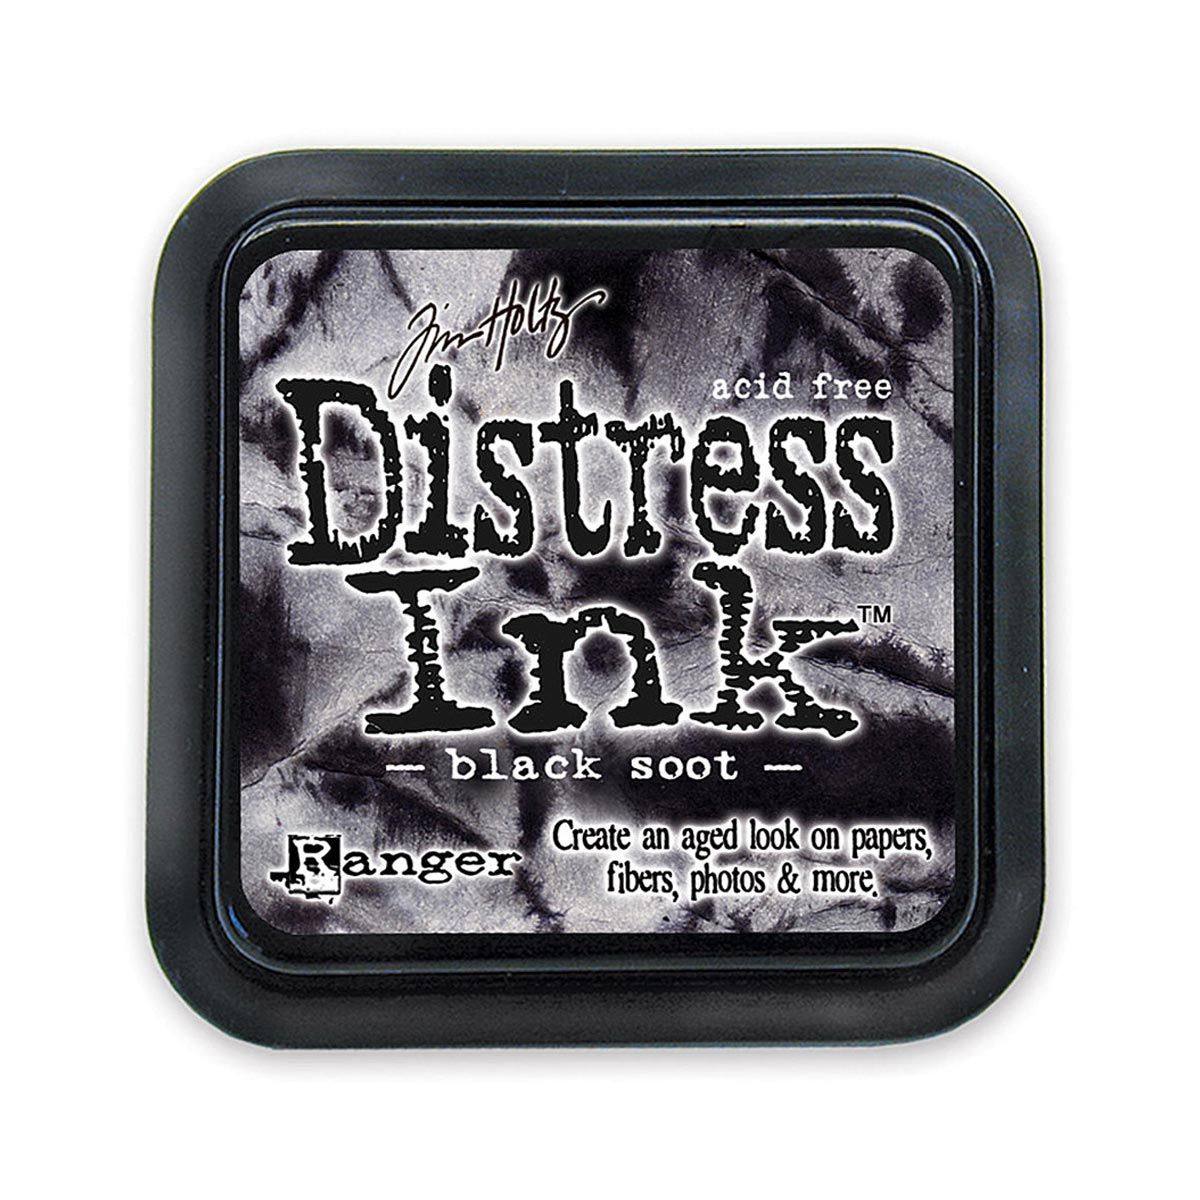 Tim Holtz Mini Distress Ink Pad, Black Soot 1x1 inch